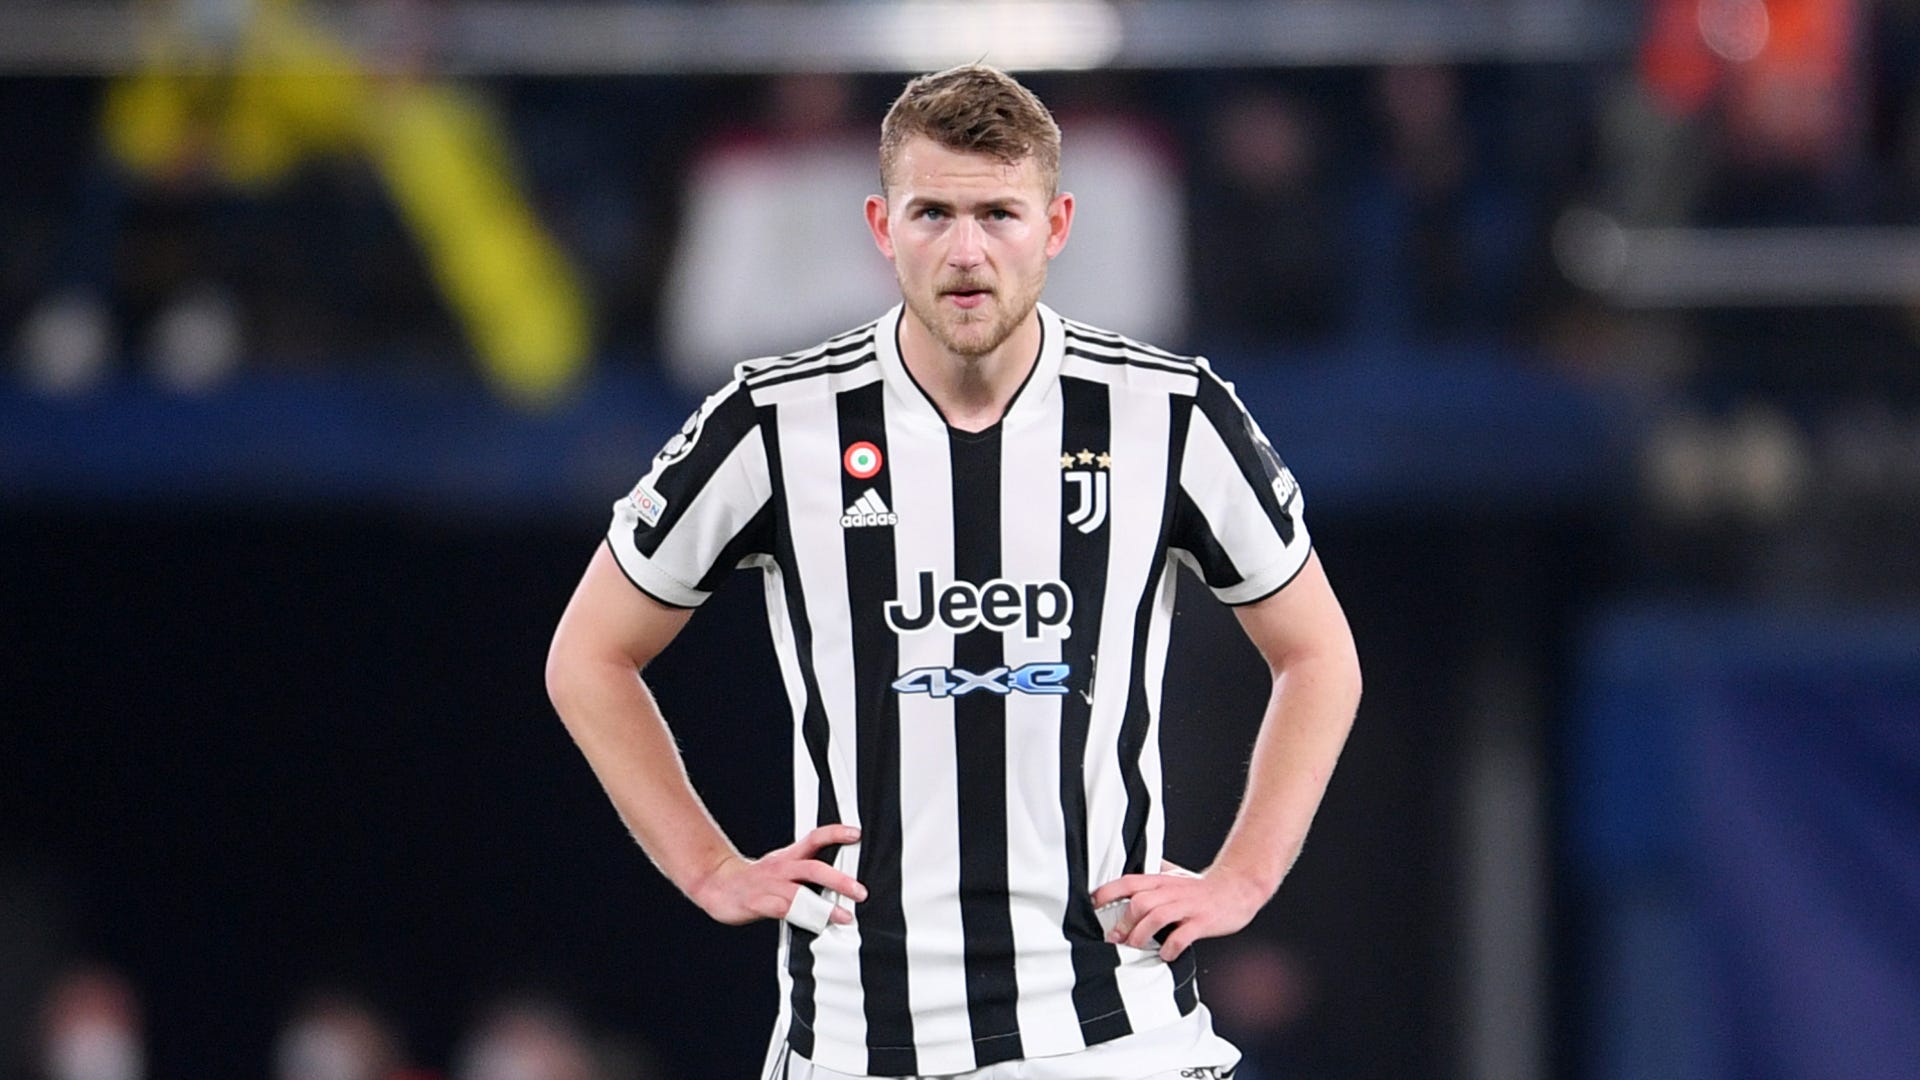 Not enough' - De Ligt demands Juventus improvement amid contract uncertainty | Goal.com Singapore